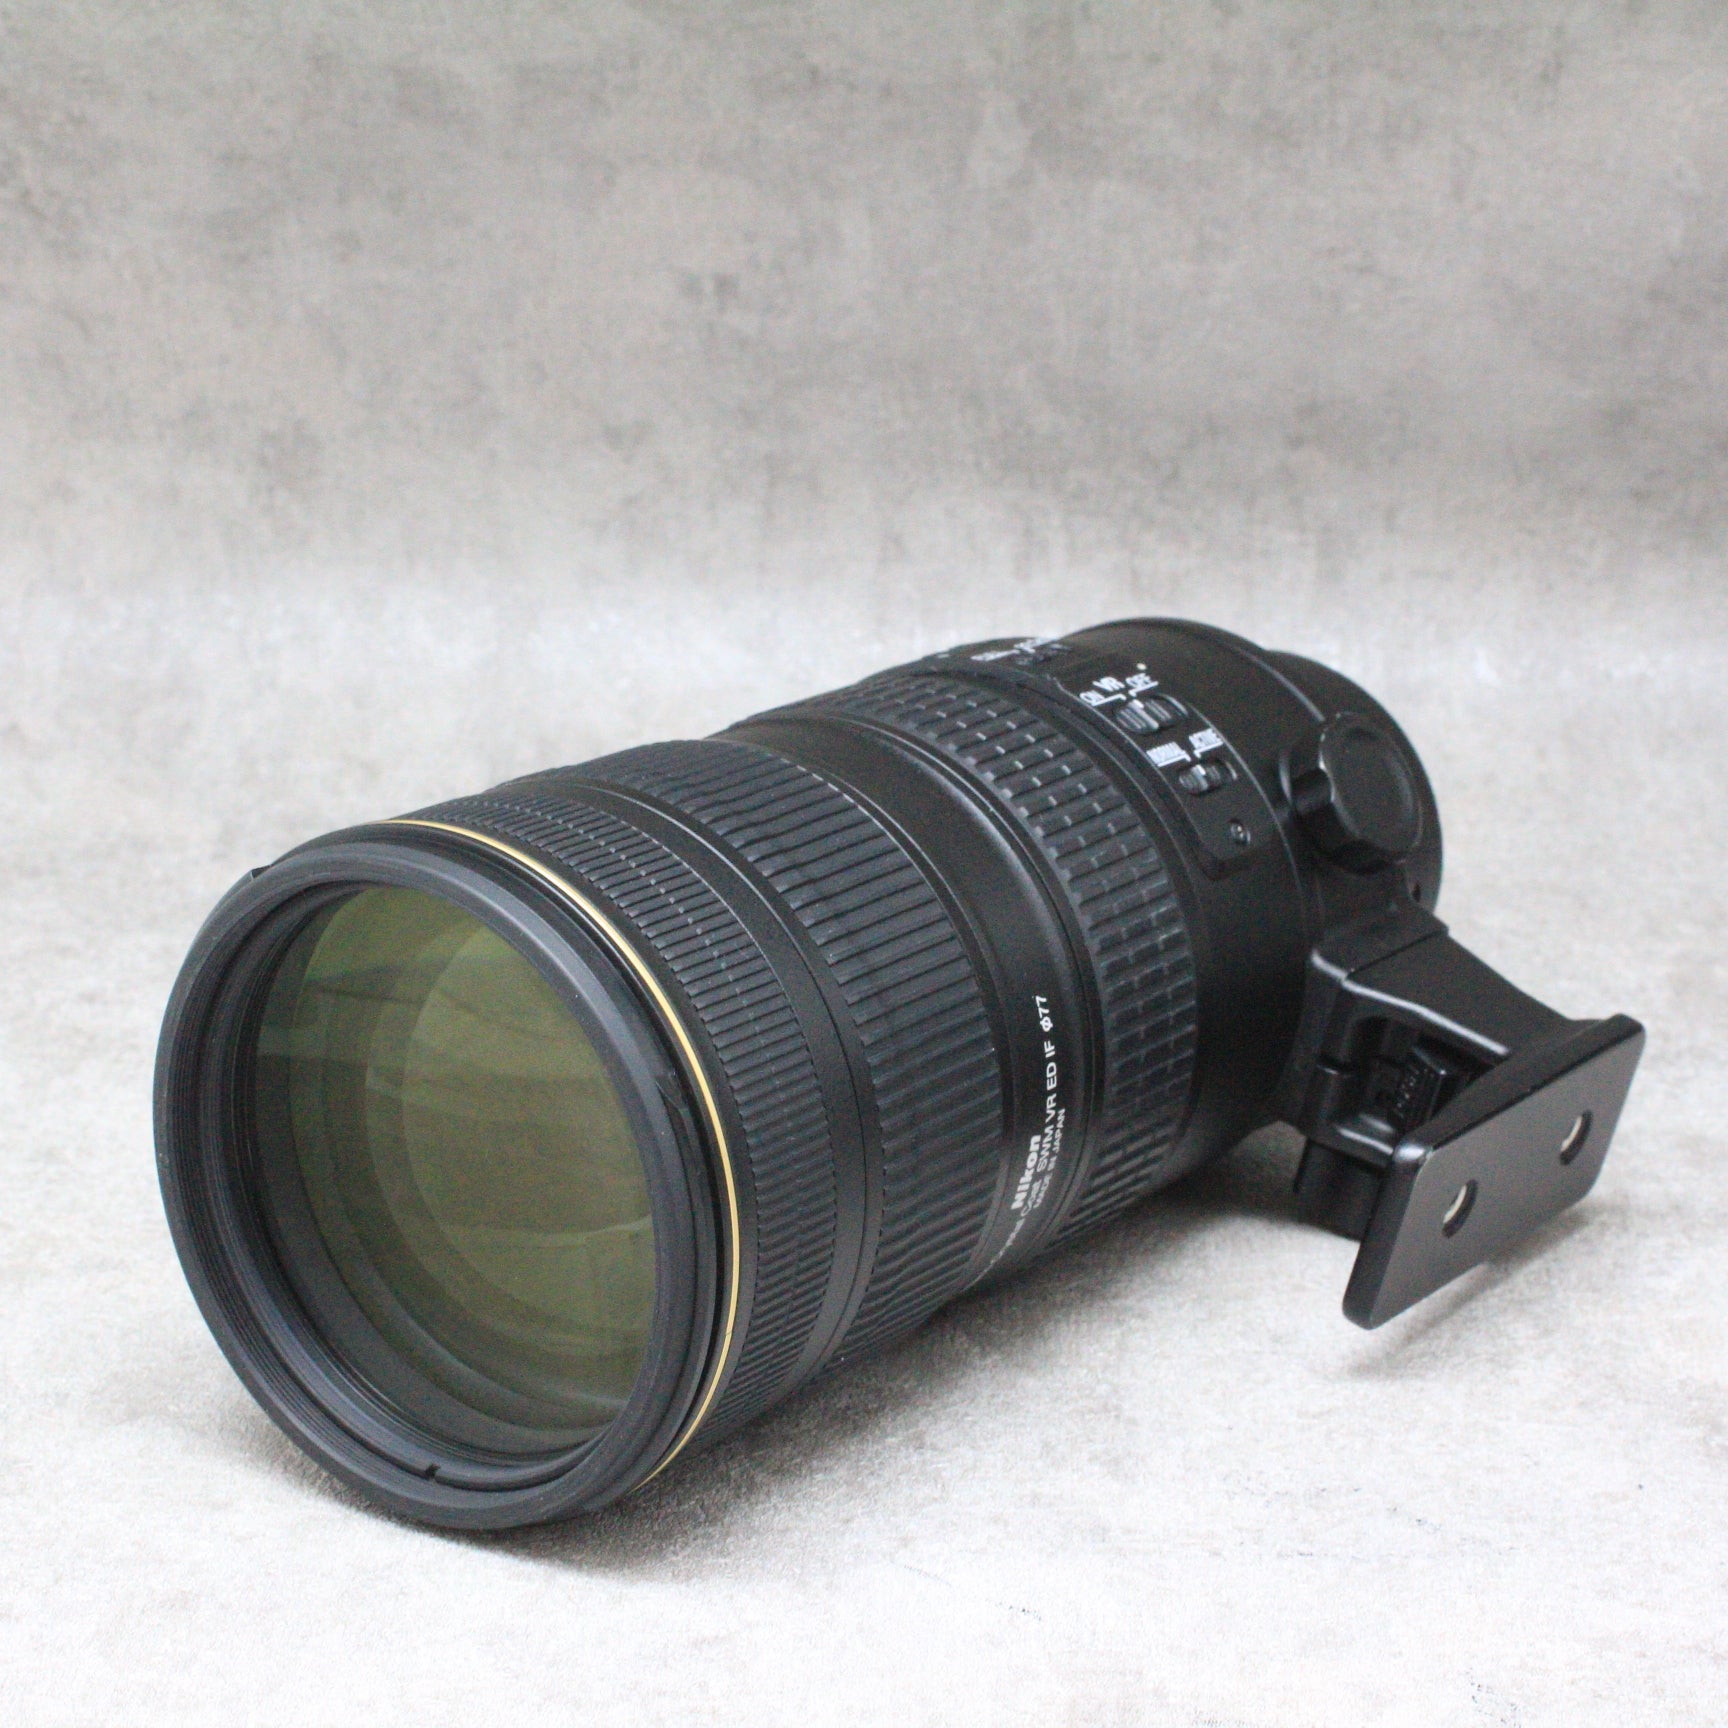 中古品 Nikon AF-S NIKKOR 70-200mm F2.8G ED VR IIさんぴん商会